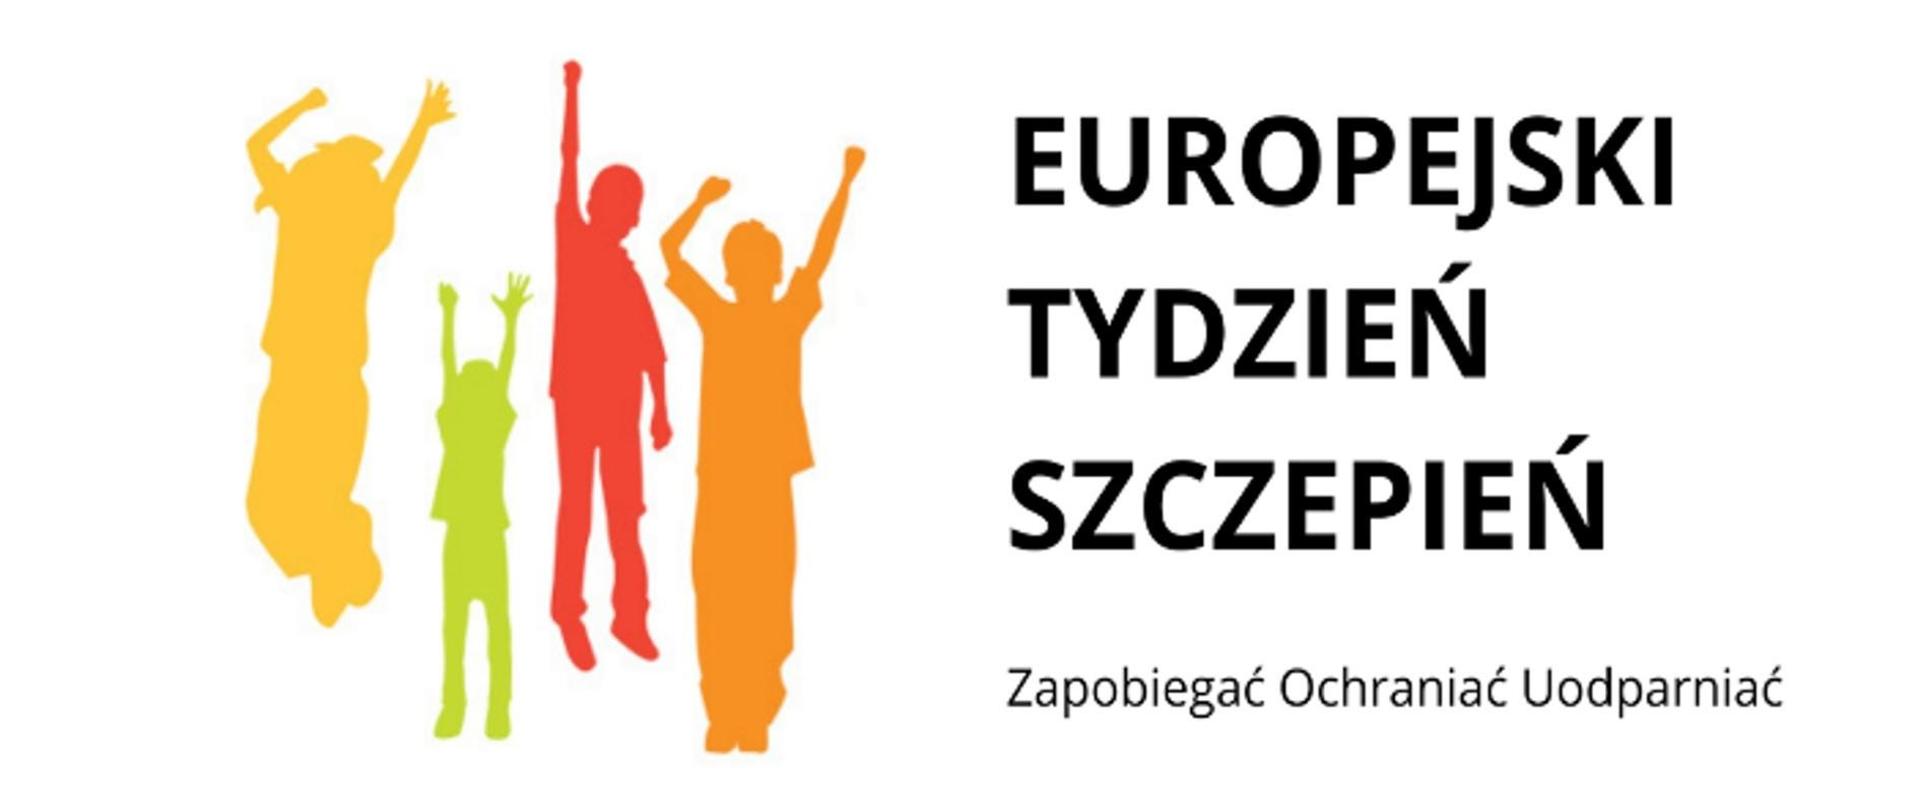 Europejski Tydzień Szczepień - Zapobiegać Ochraniać Uodparniać 24-30.04.2023 r.